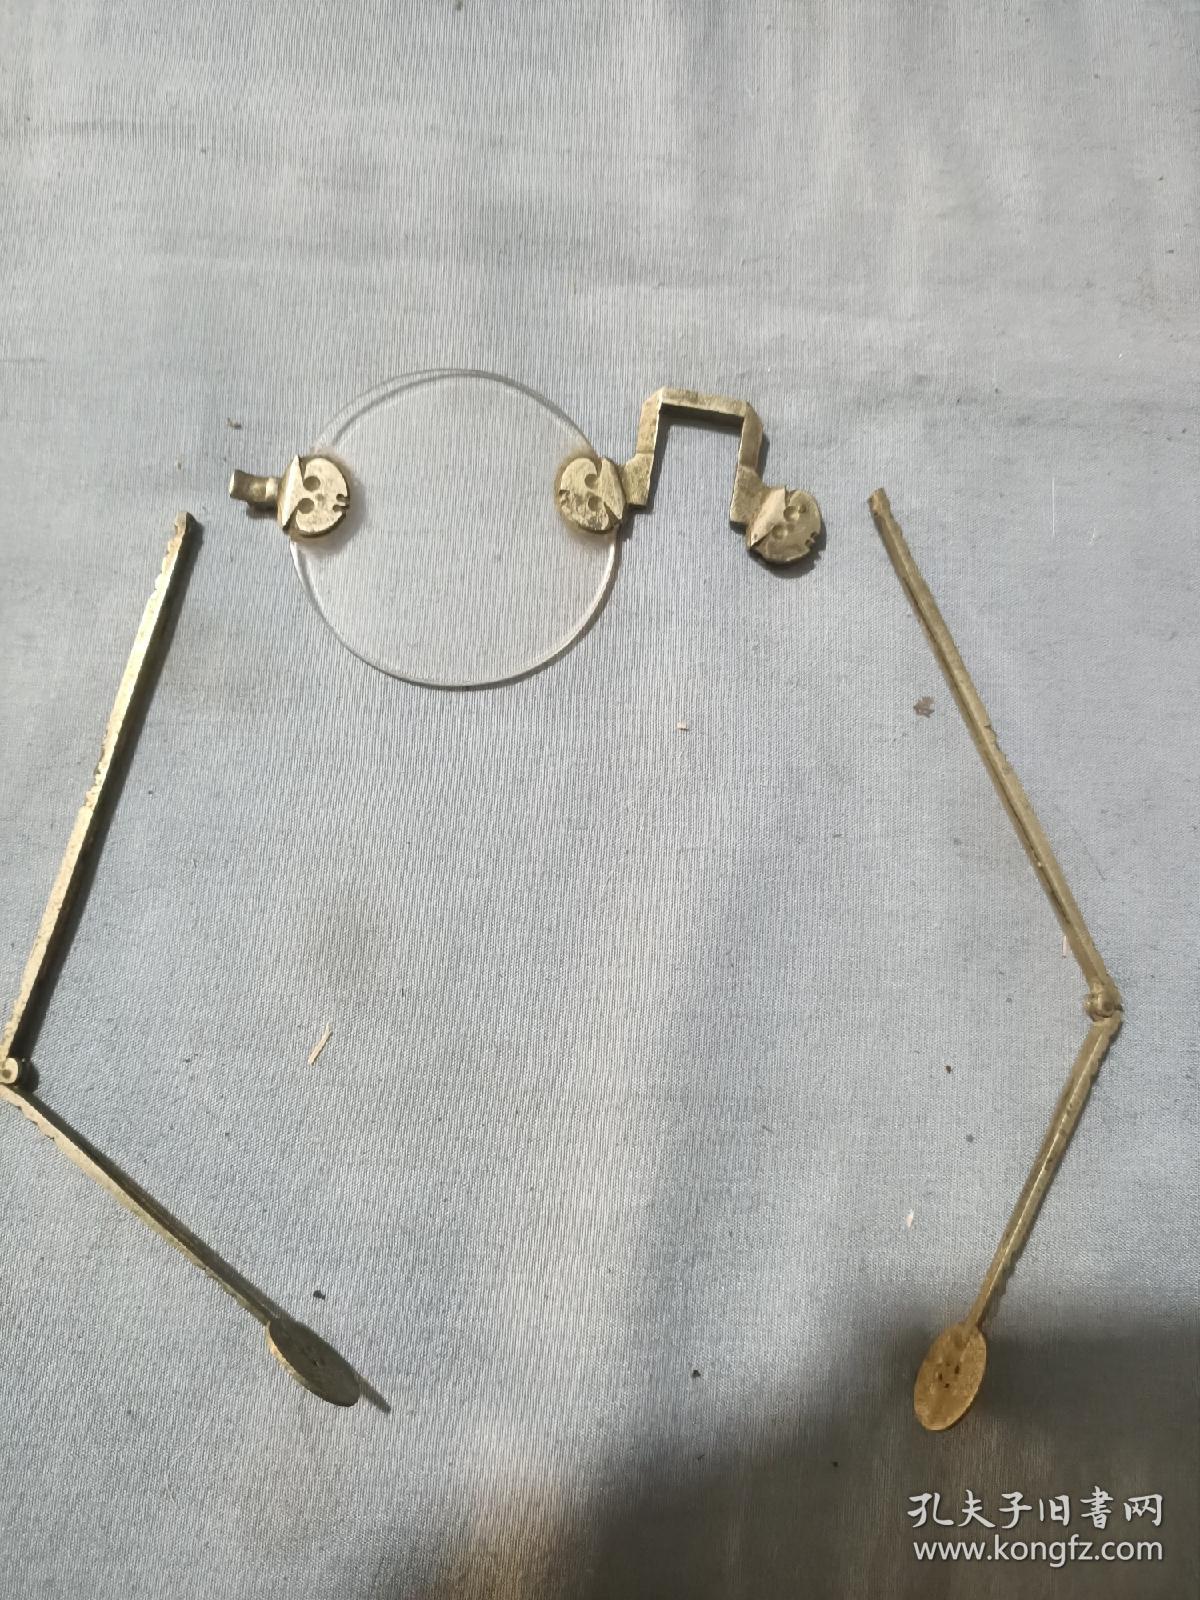 清代白铜腿水晶眼镜有残缺。直径4.6厘米。